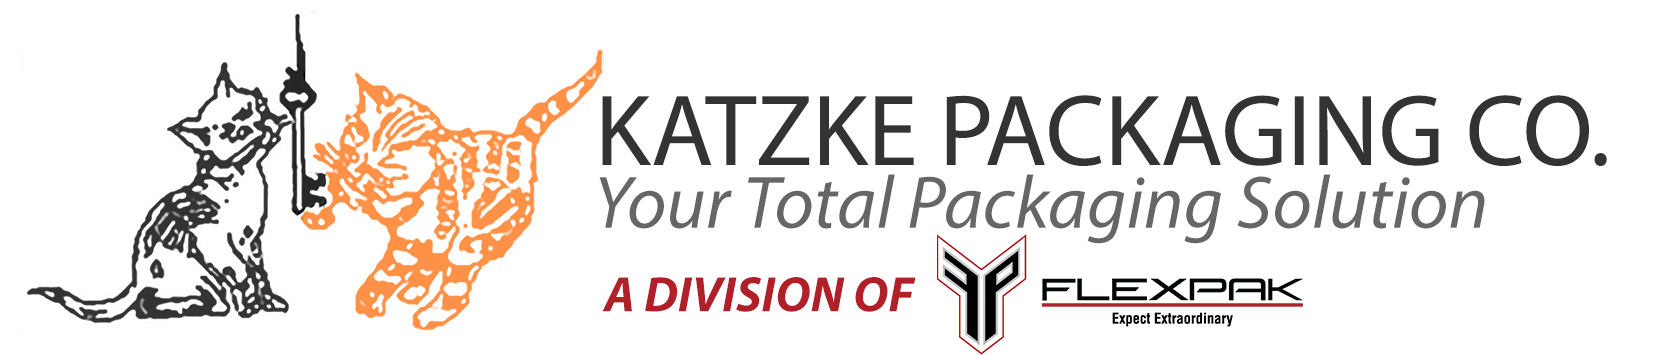 Katzke Packaging Co.